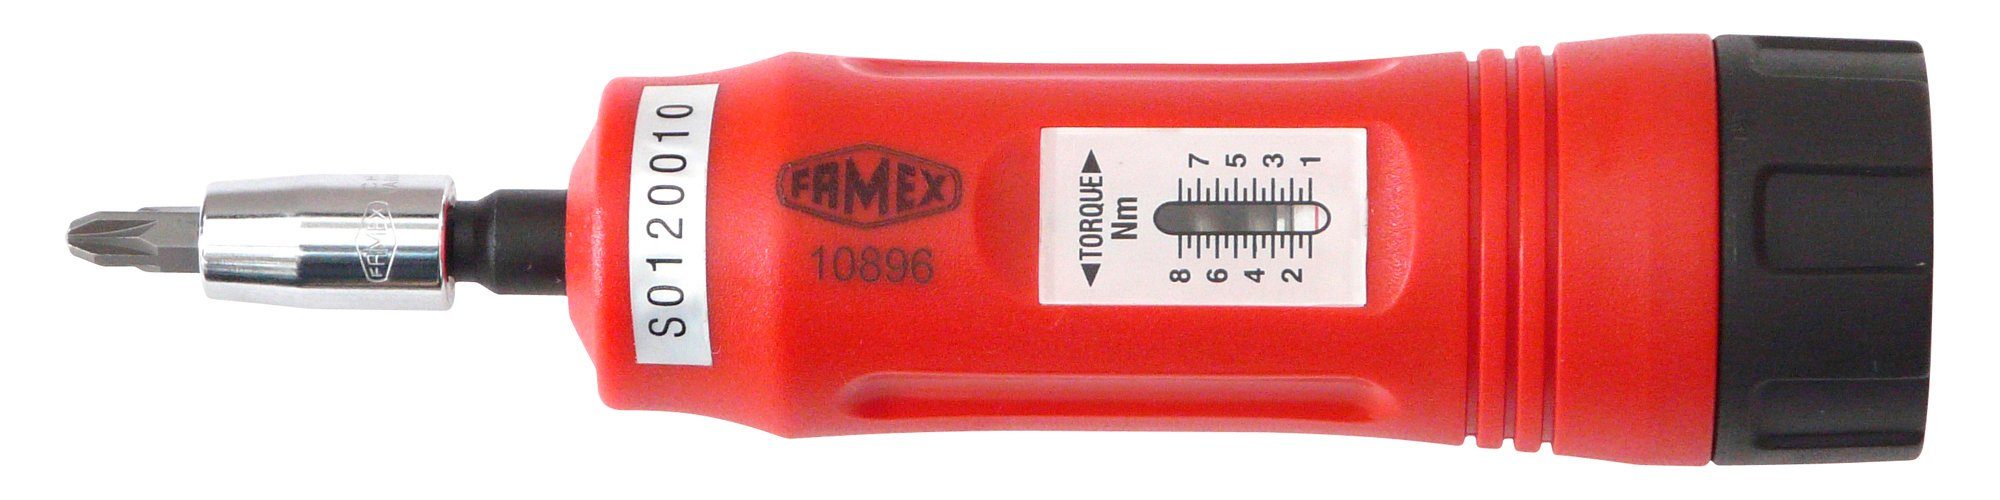 1-8 FAMEX 10896, Nm Drehmomentschlüssel